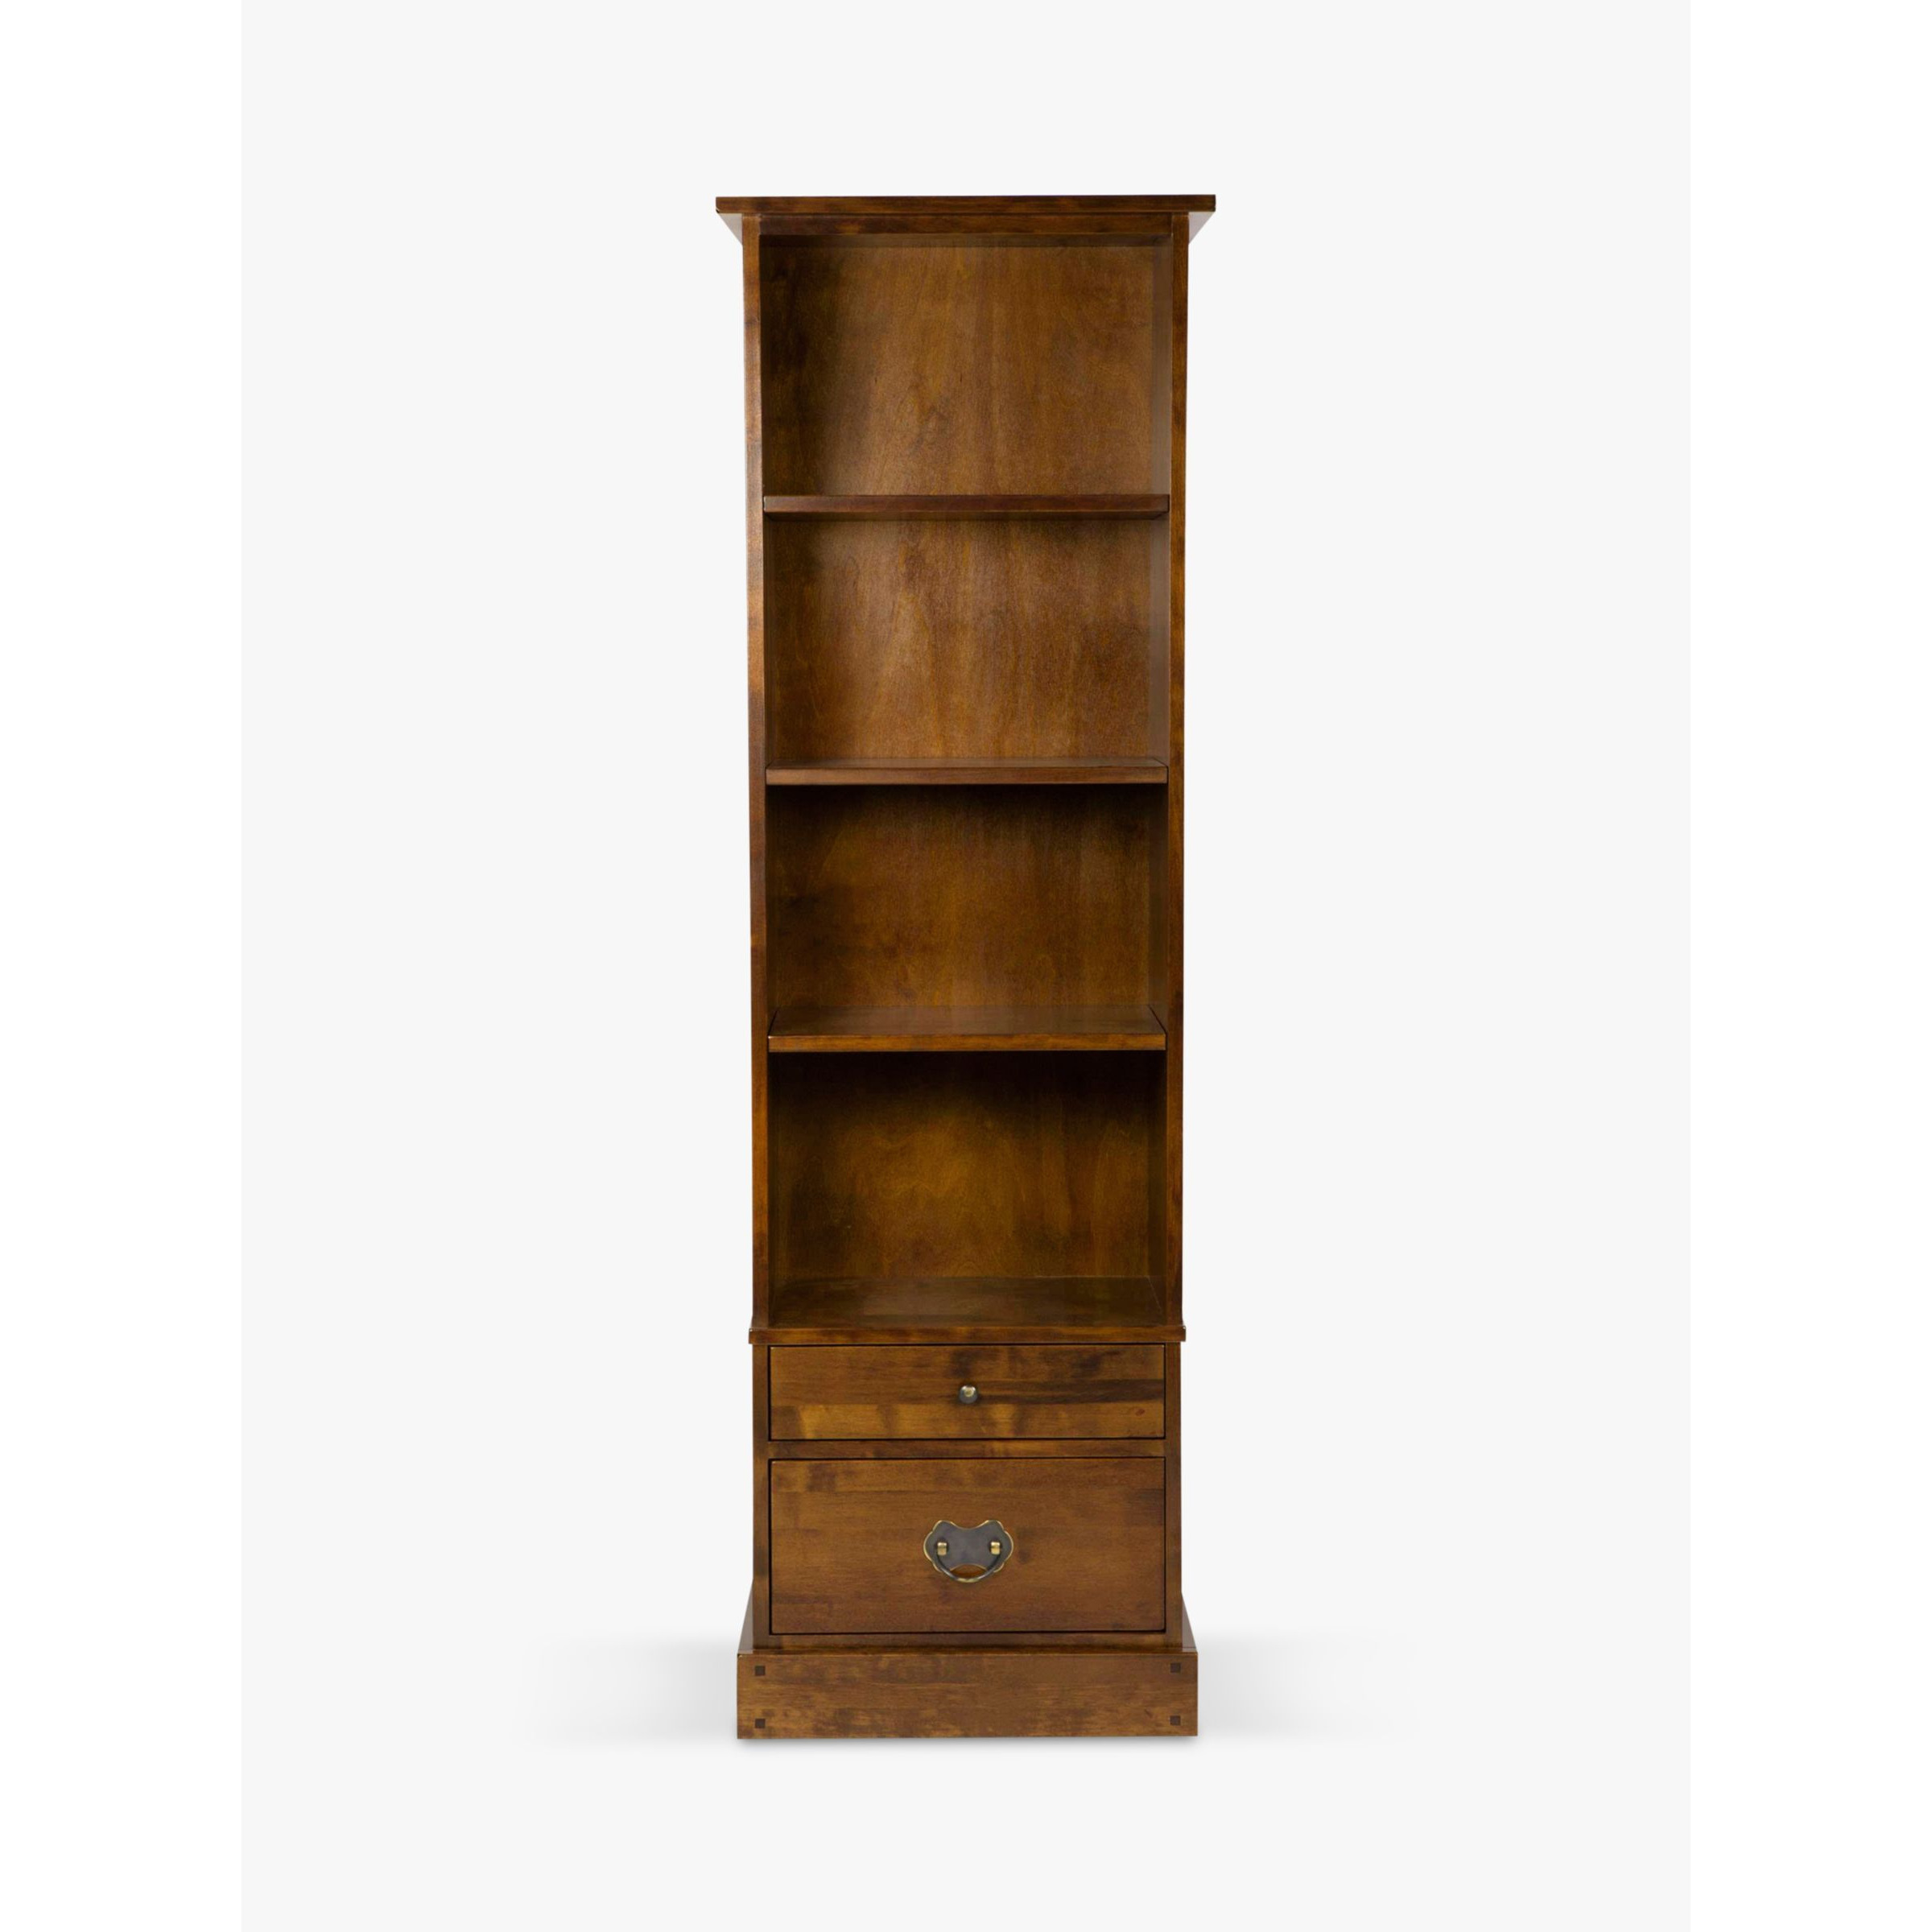 Laura Ashley Garrat Bookcase, Dark Brown - image 1